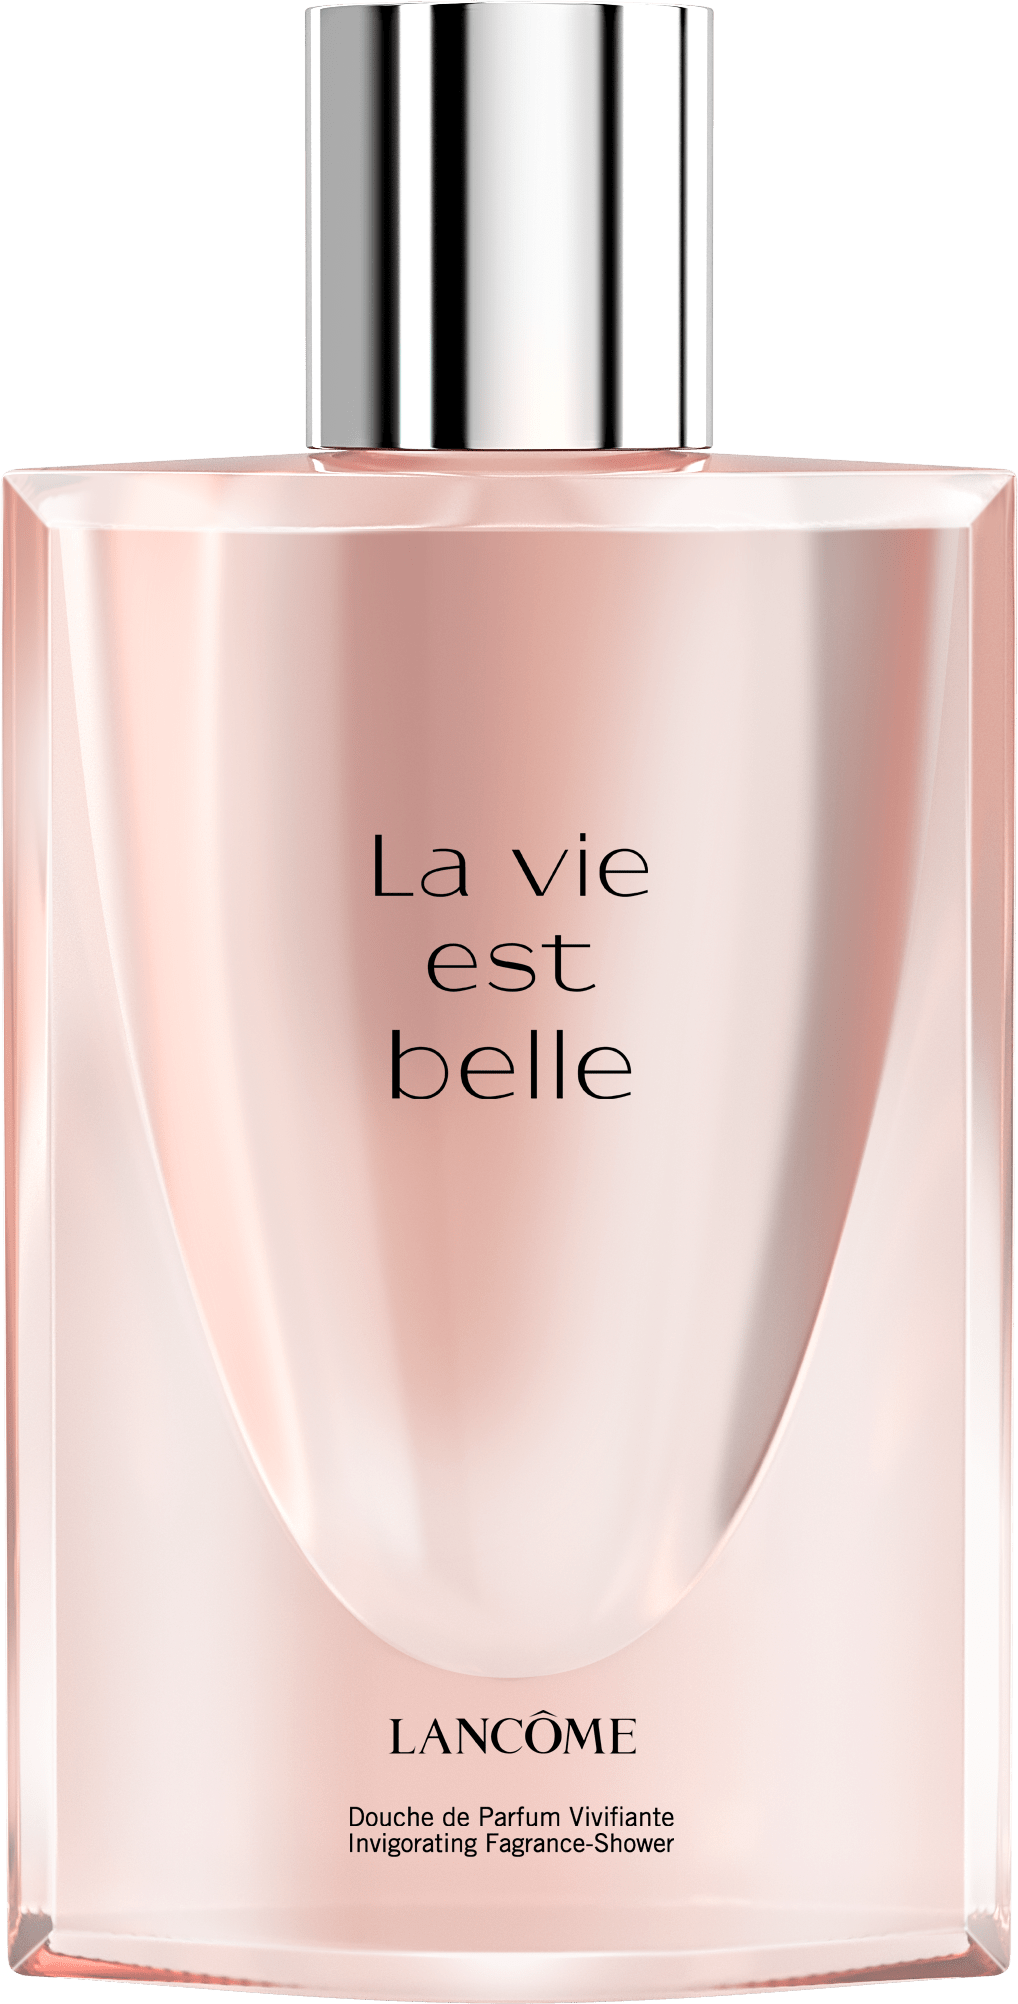 concept Flacon Lancome luxe LVEB parfum retouche simulation